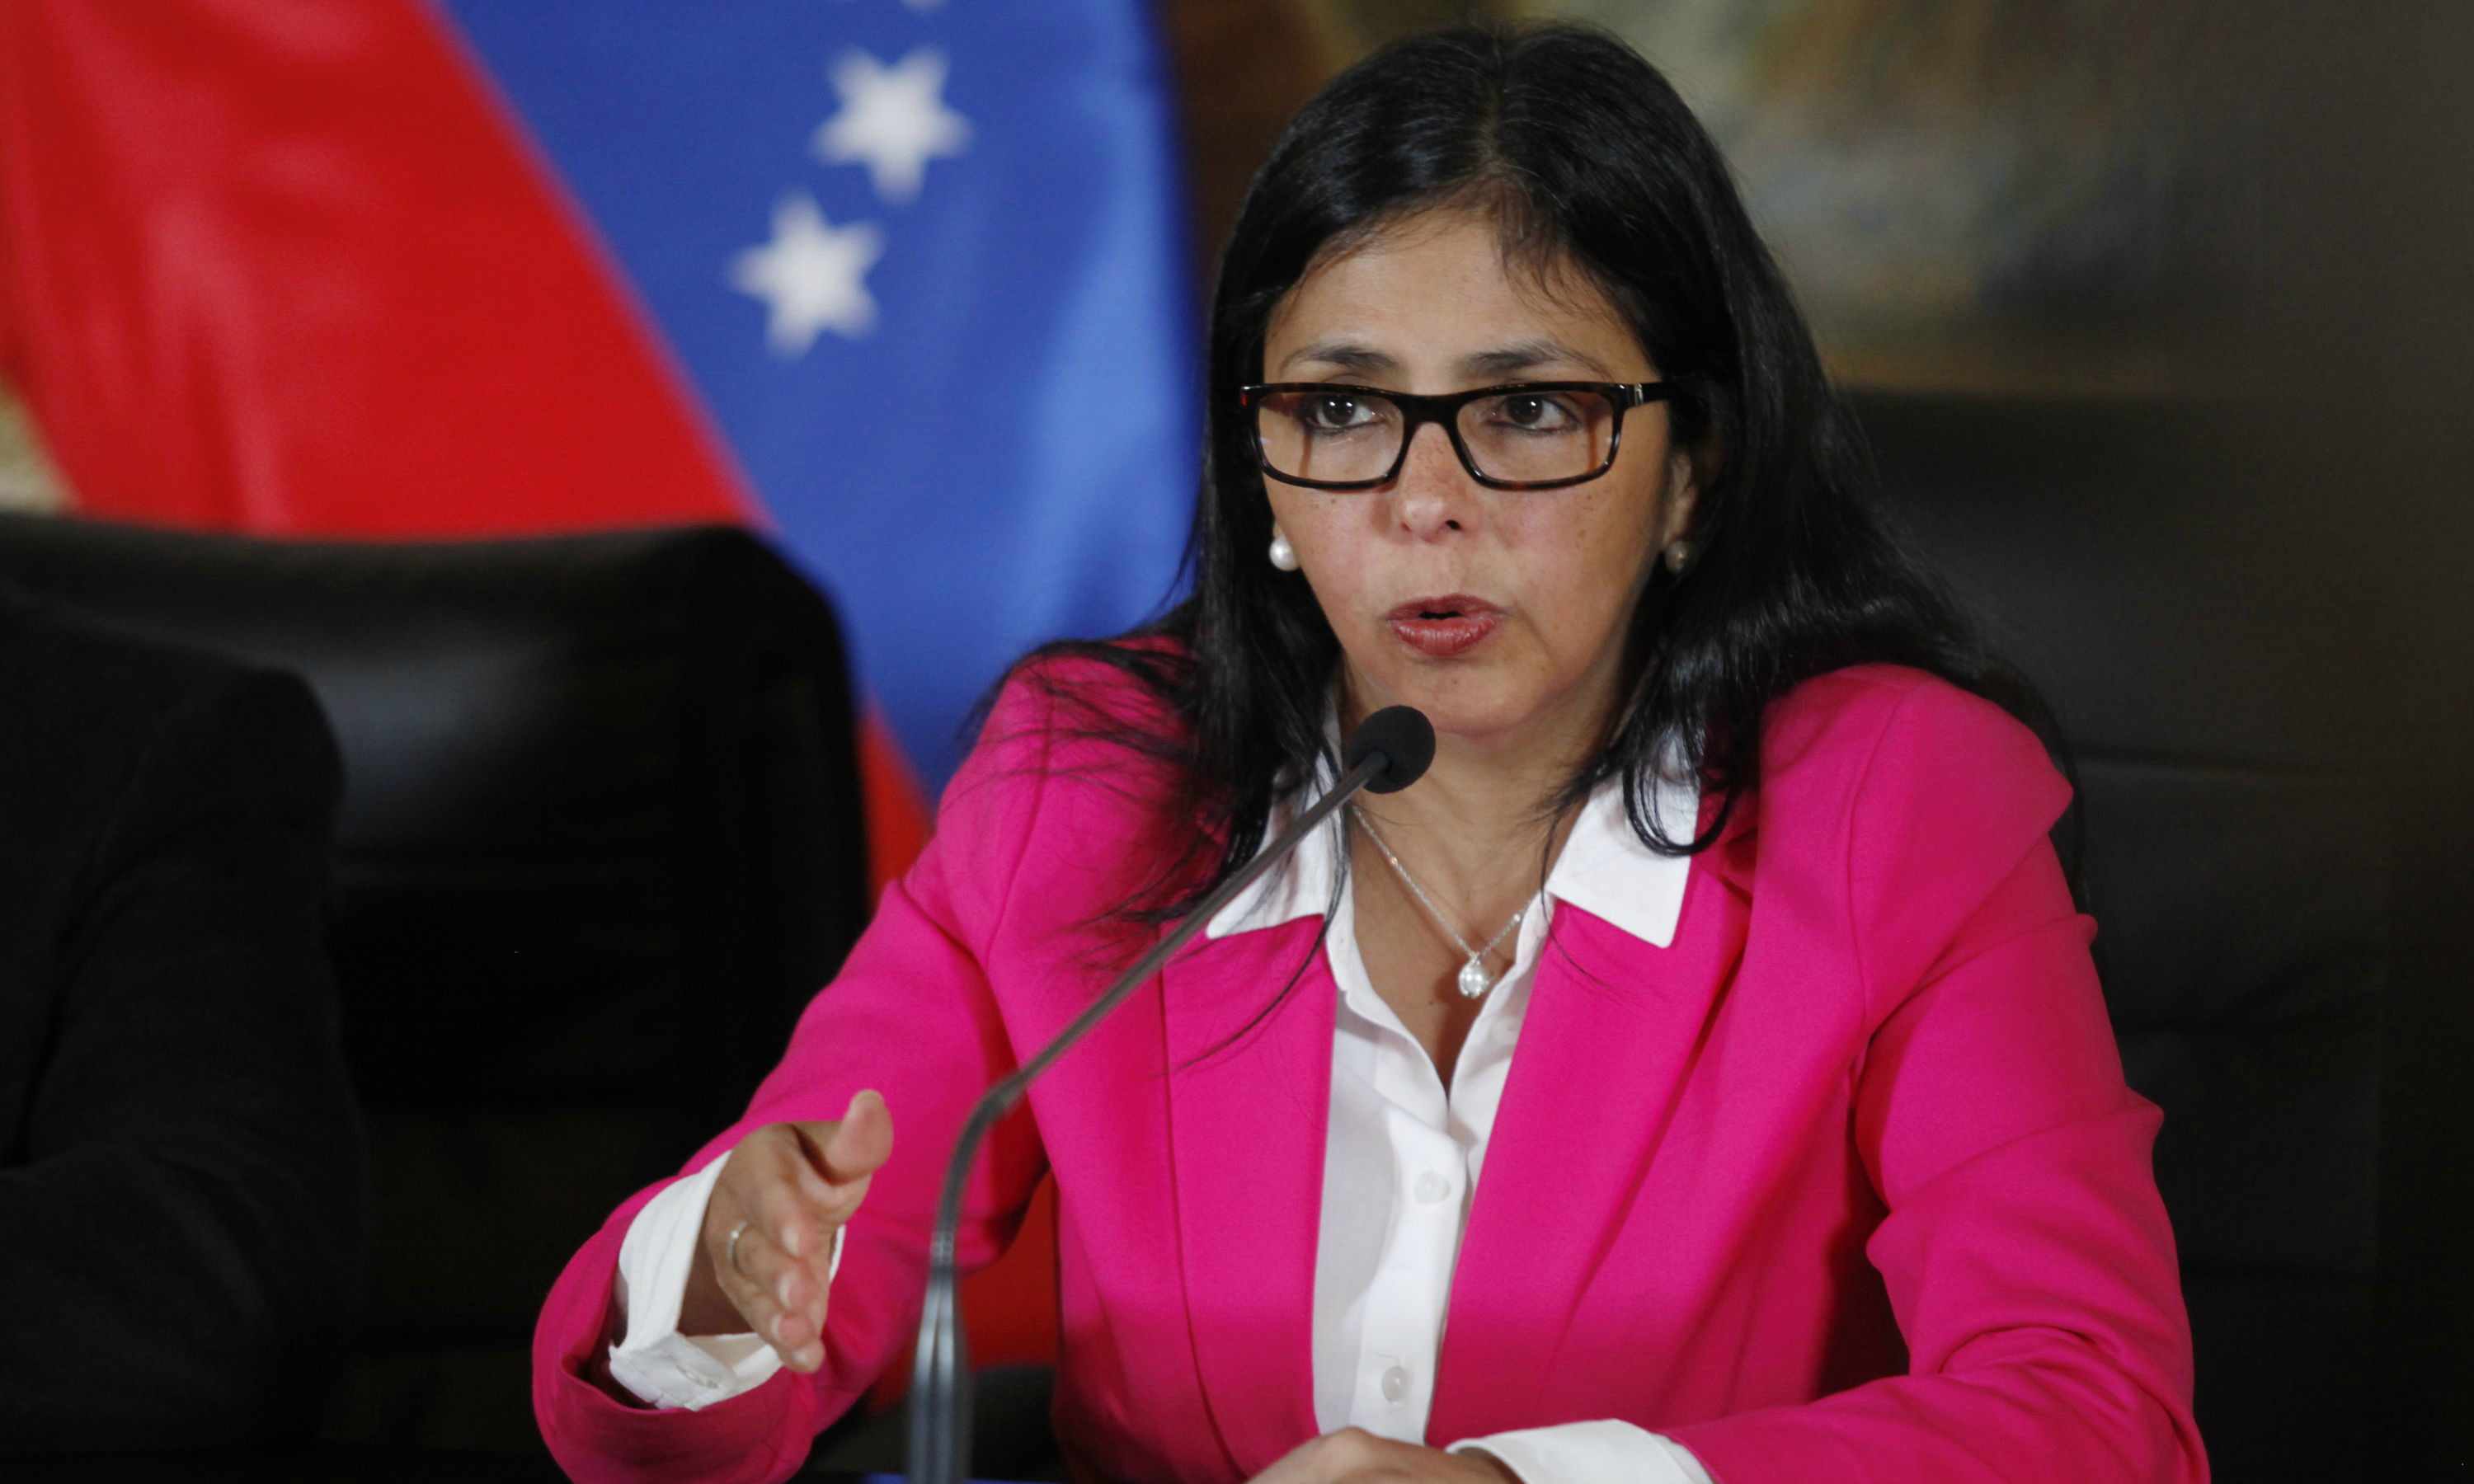 La presidente de la Asamblea Nacional Constituyente se dirigó directamente al canciller chileno por medio de su cuenta en Twitter para exigirle respeto